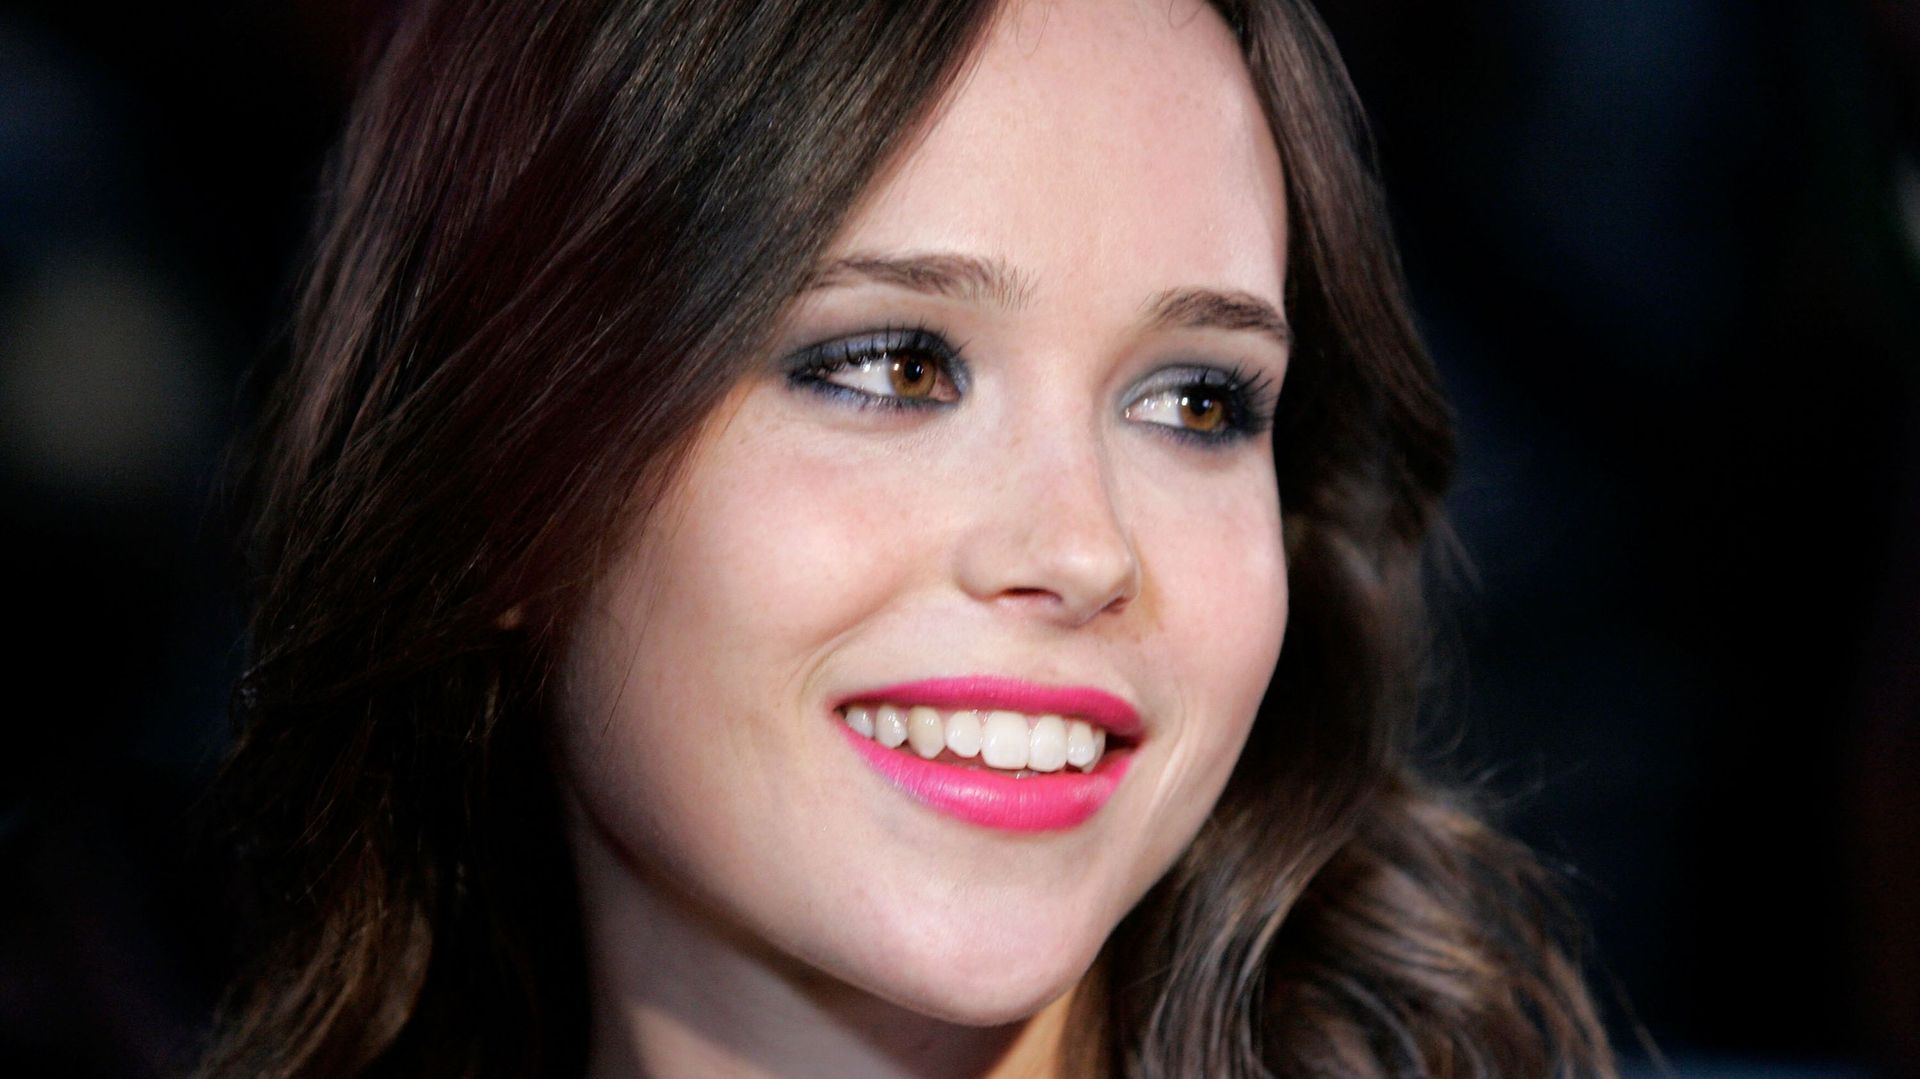 L'actrice Ellen Page a surpris tout le monde lors d'une conférence, en annonçant son homosexualité